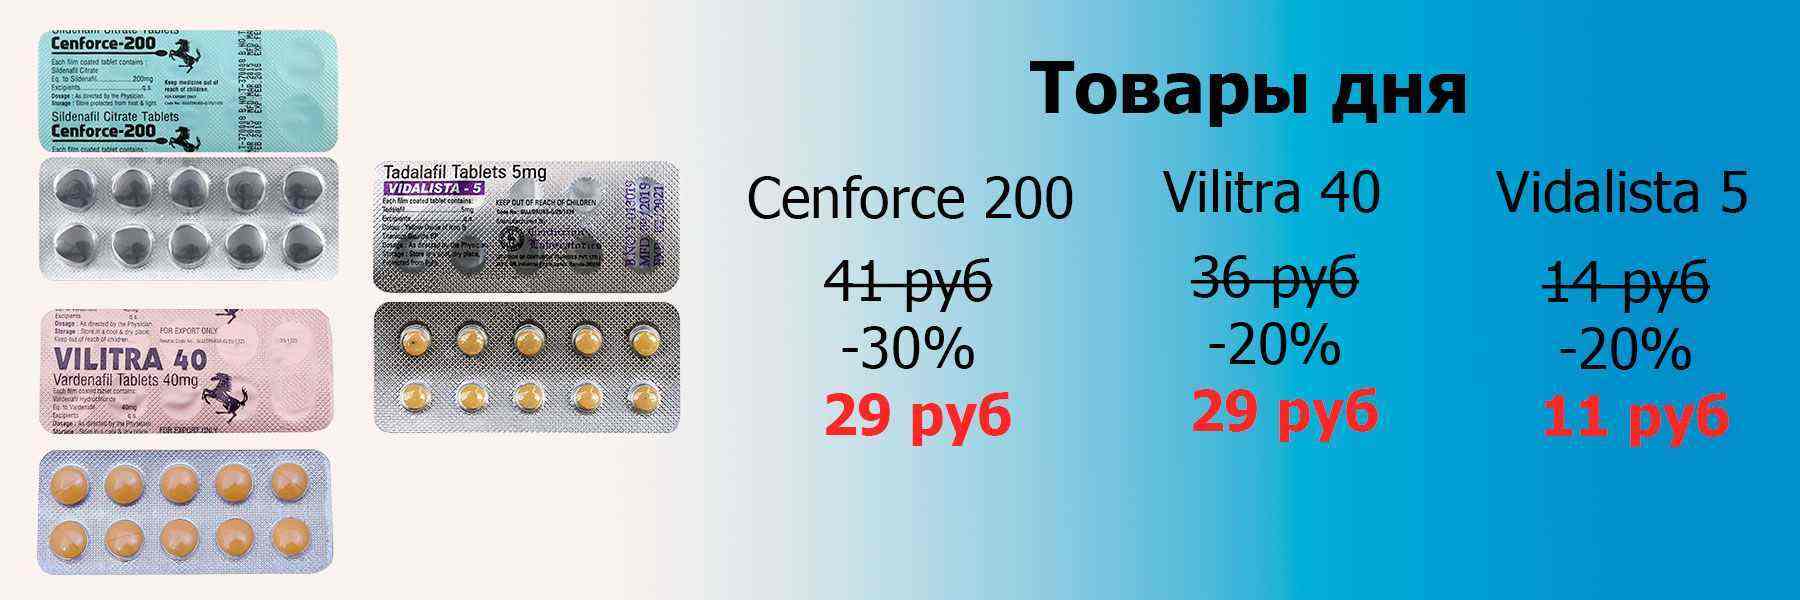 Cenforce-200-Vilitra-40-Vidalista-5-genetrip.jpg